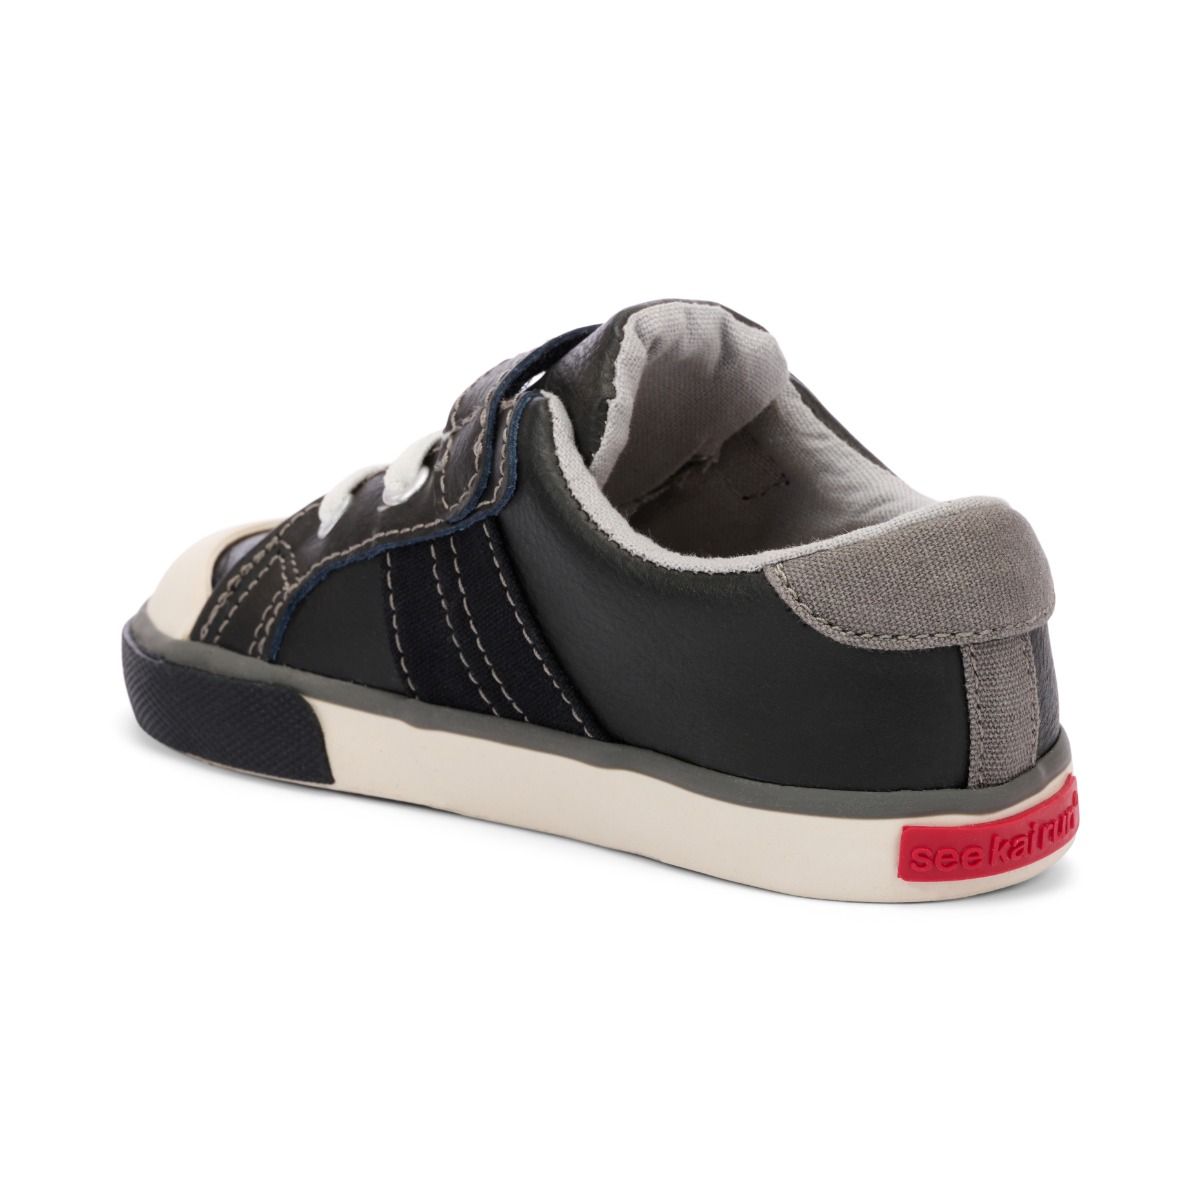 See Kai Run Lucci Sneaker - Black Leather/Grey 2